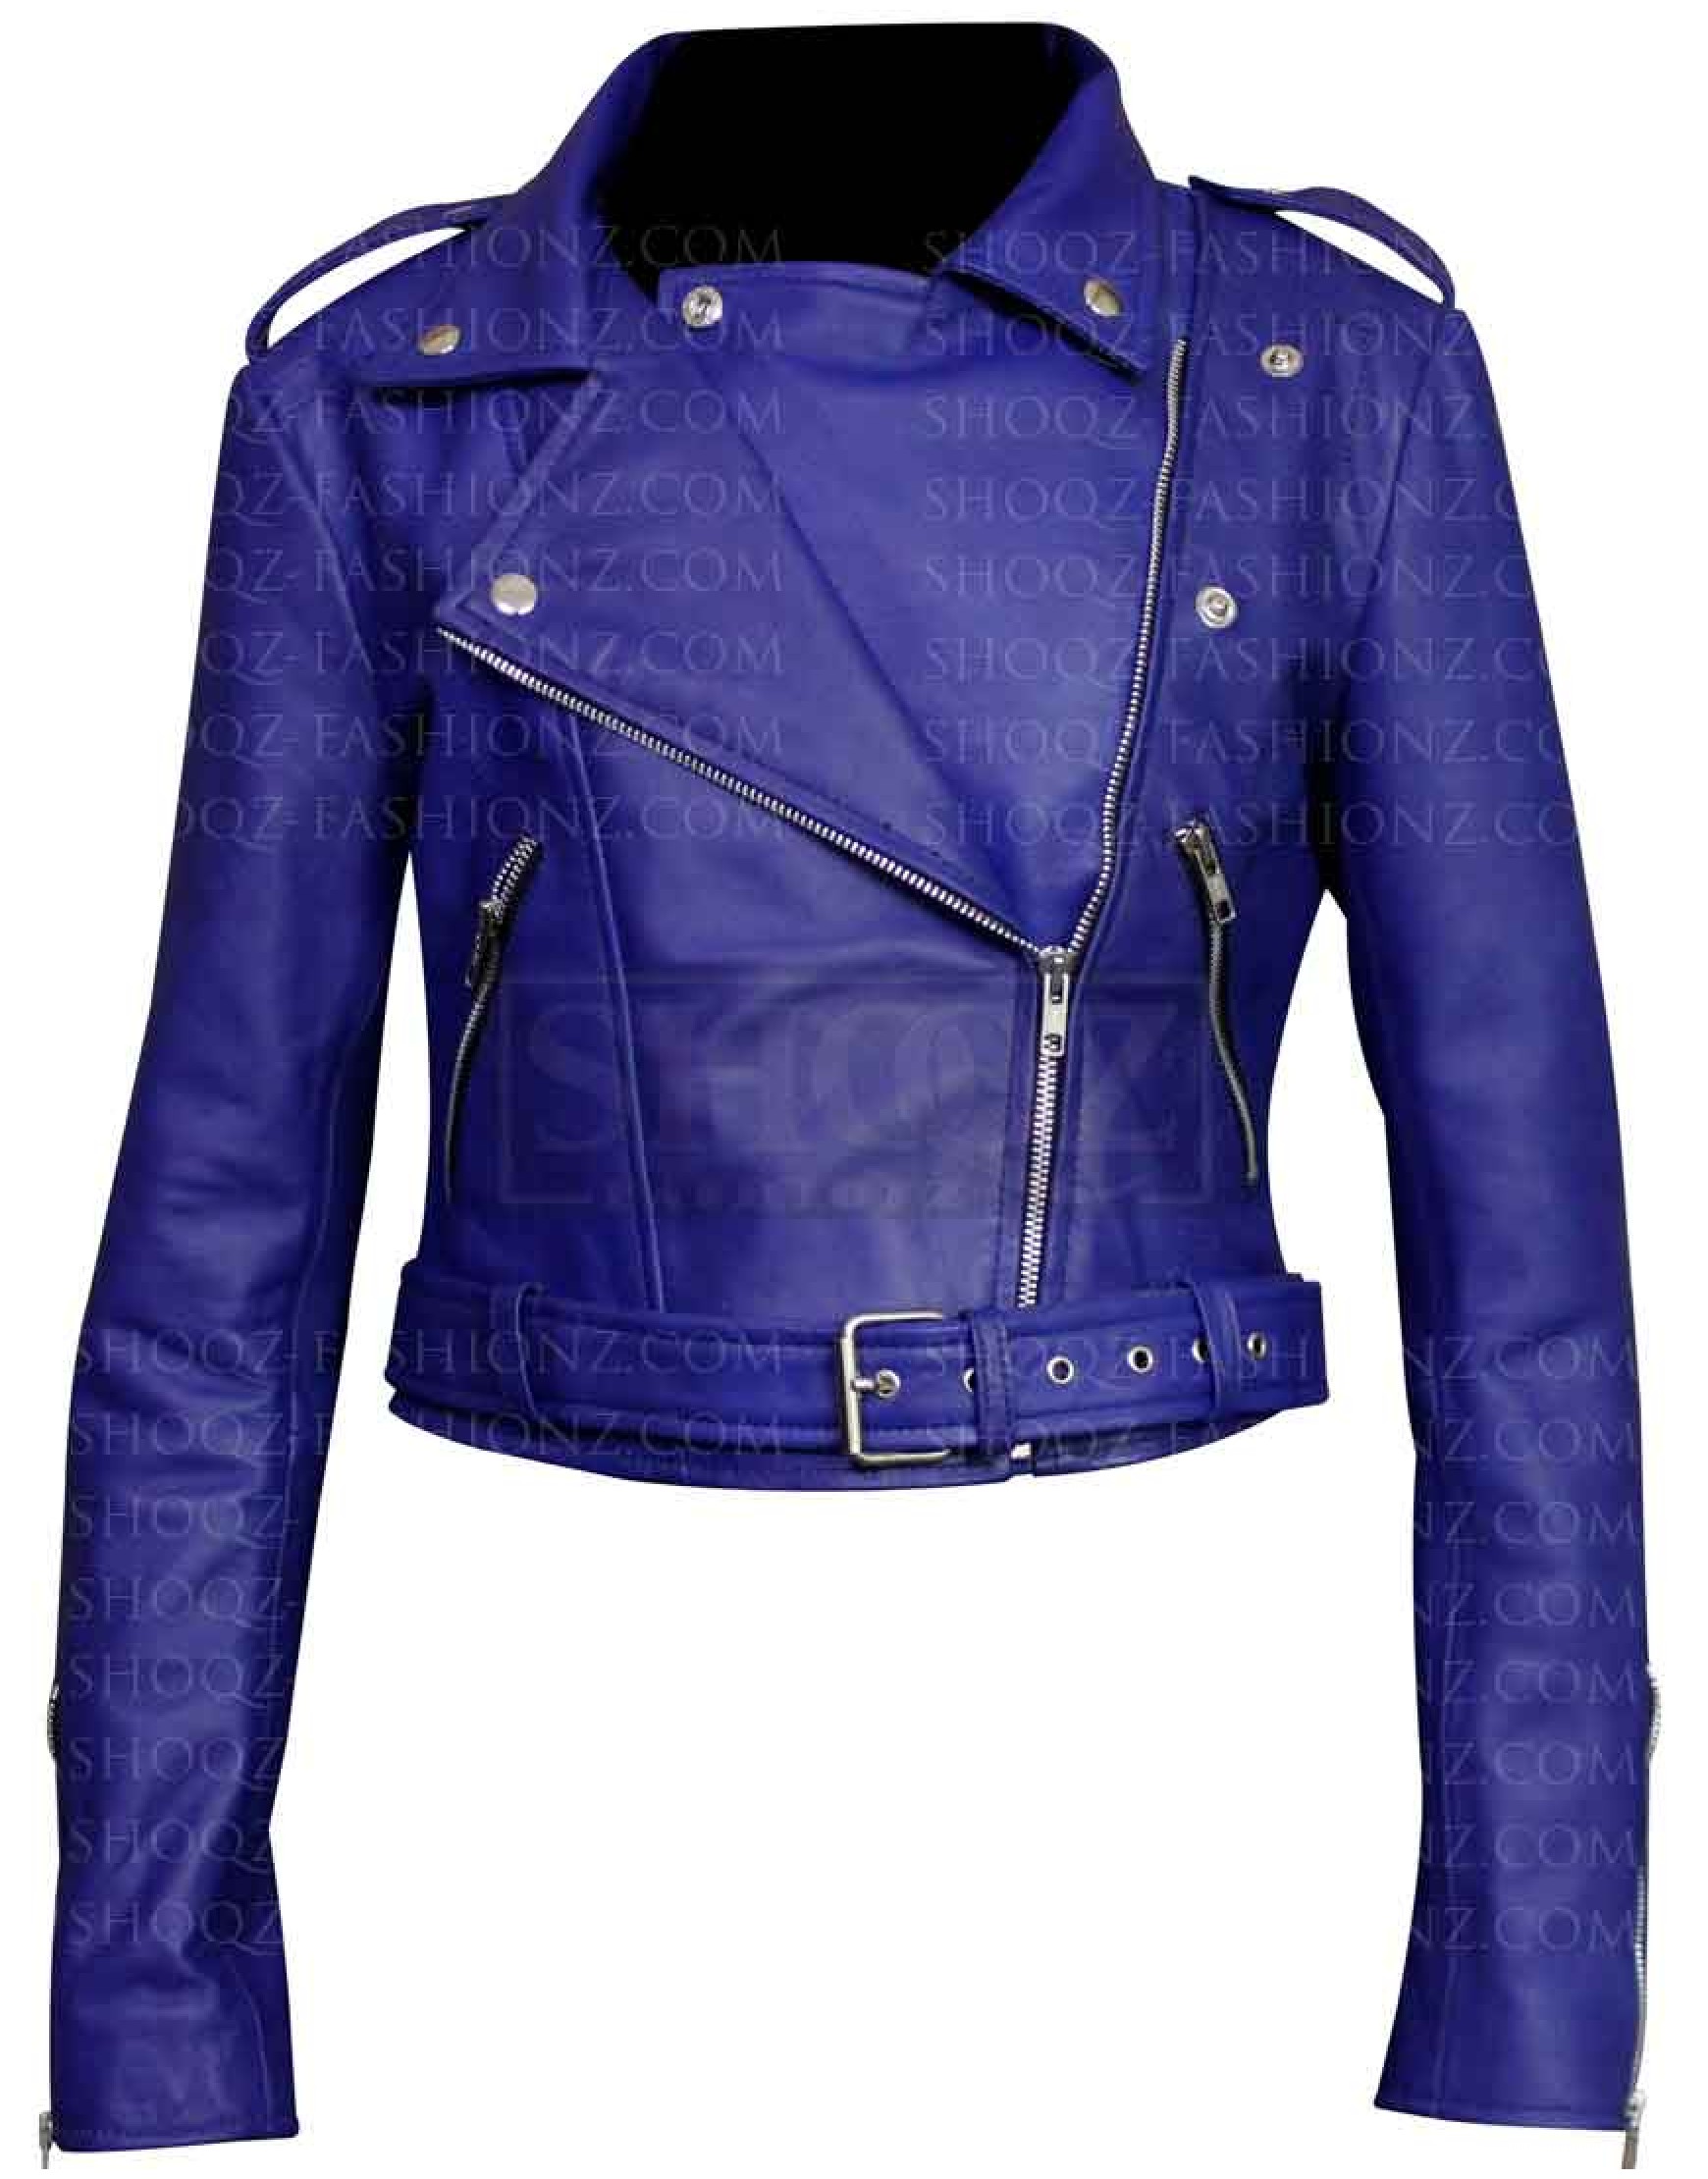 Womens Royal Blue Jacket |Women's Blue Biker Jacket